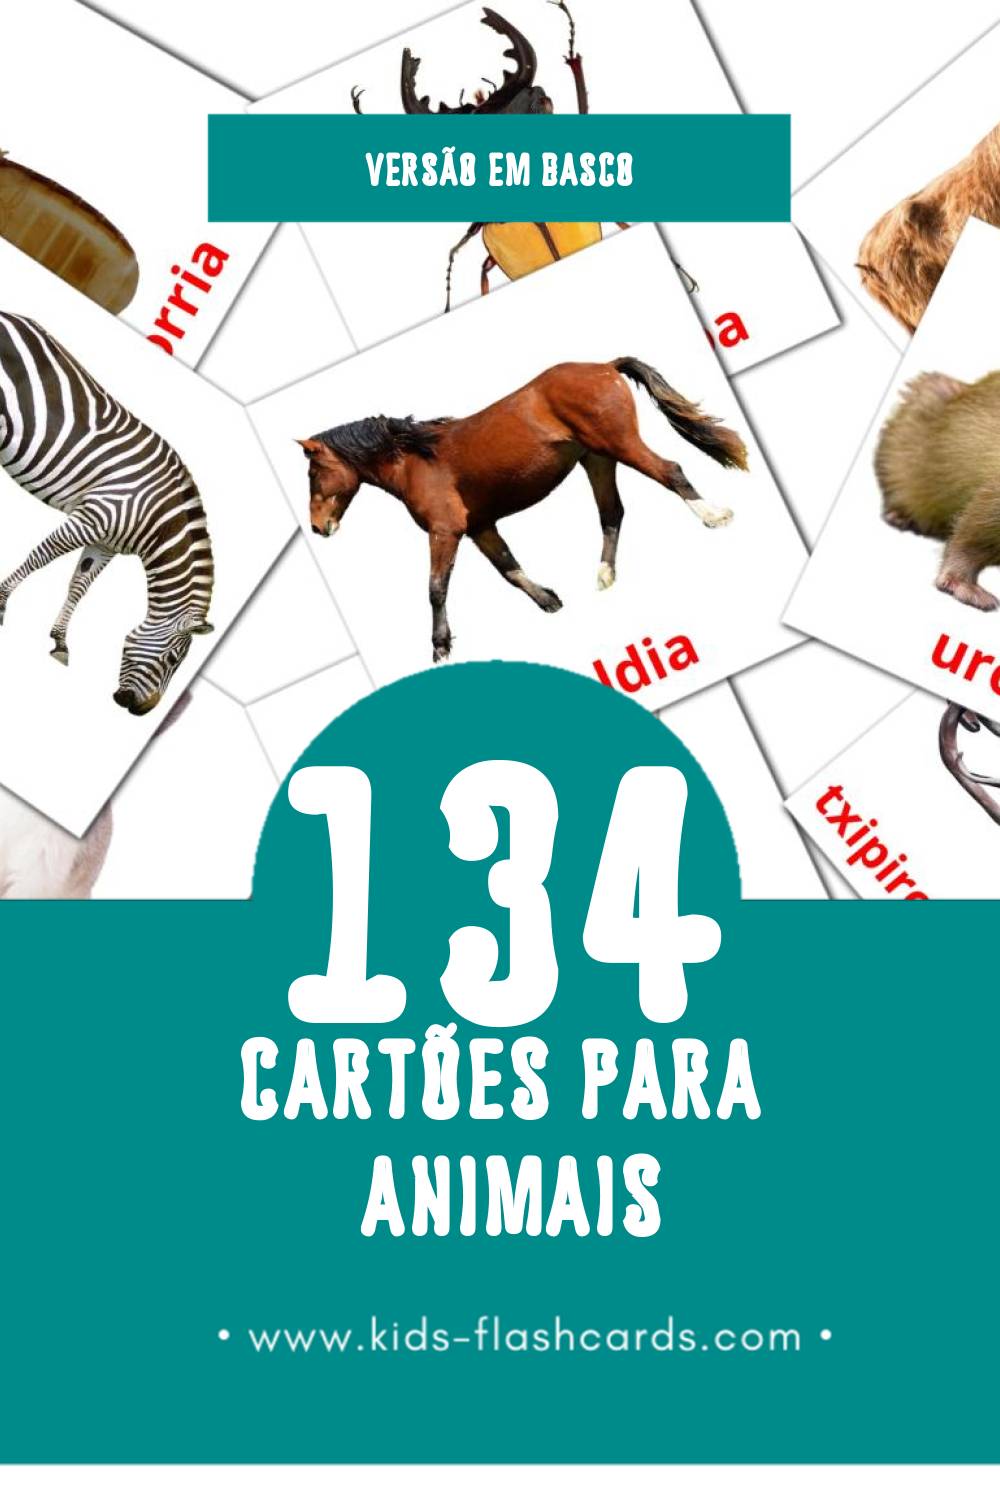 Flashcards de Animaliak Visuais para Toddlers (134 cartões em Basco)